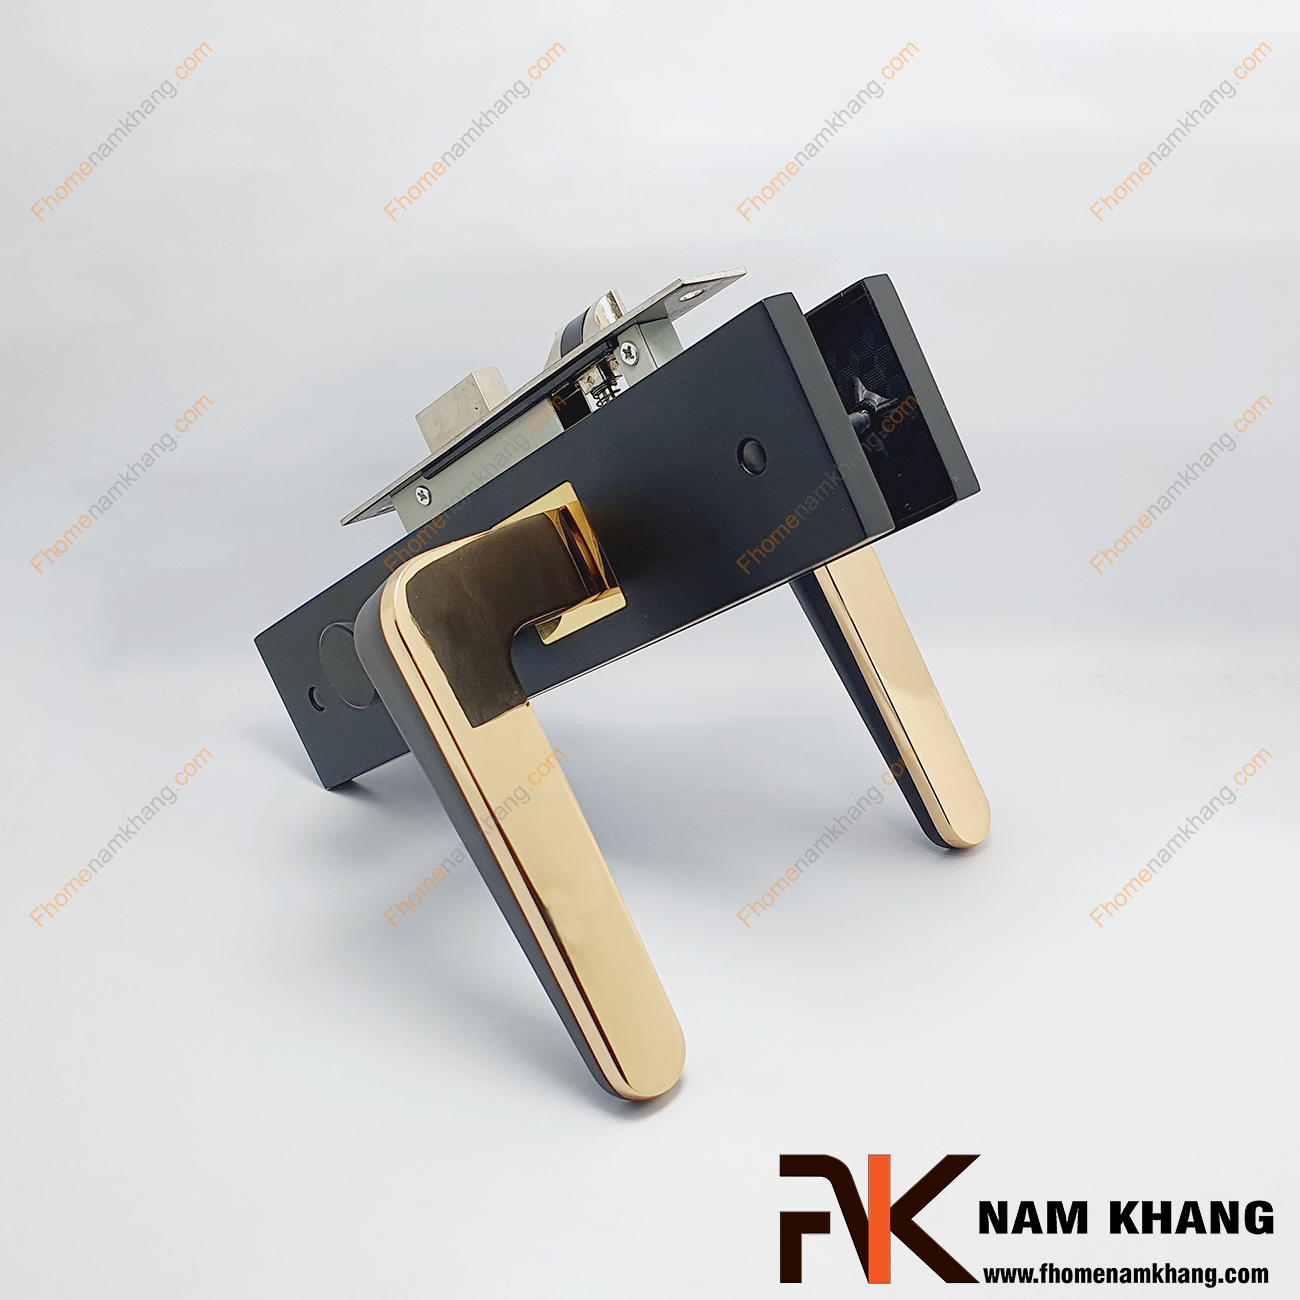 Khóa cửa thông phòng dạng trơn hiện đại màu đen NK485M-DV là một dạng khóa hiện đại thiết kế ốp góc vuông ấn tượng. Trên thân tay gạt có phối điểm vàng bóng rất nổi bật.